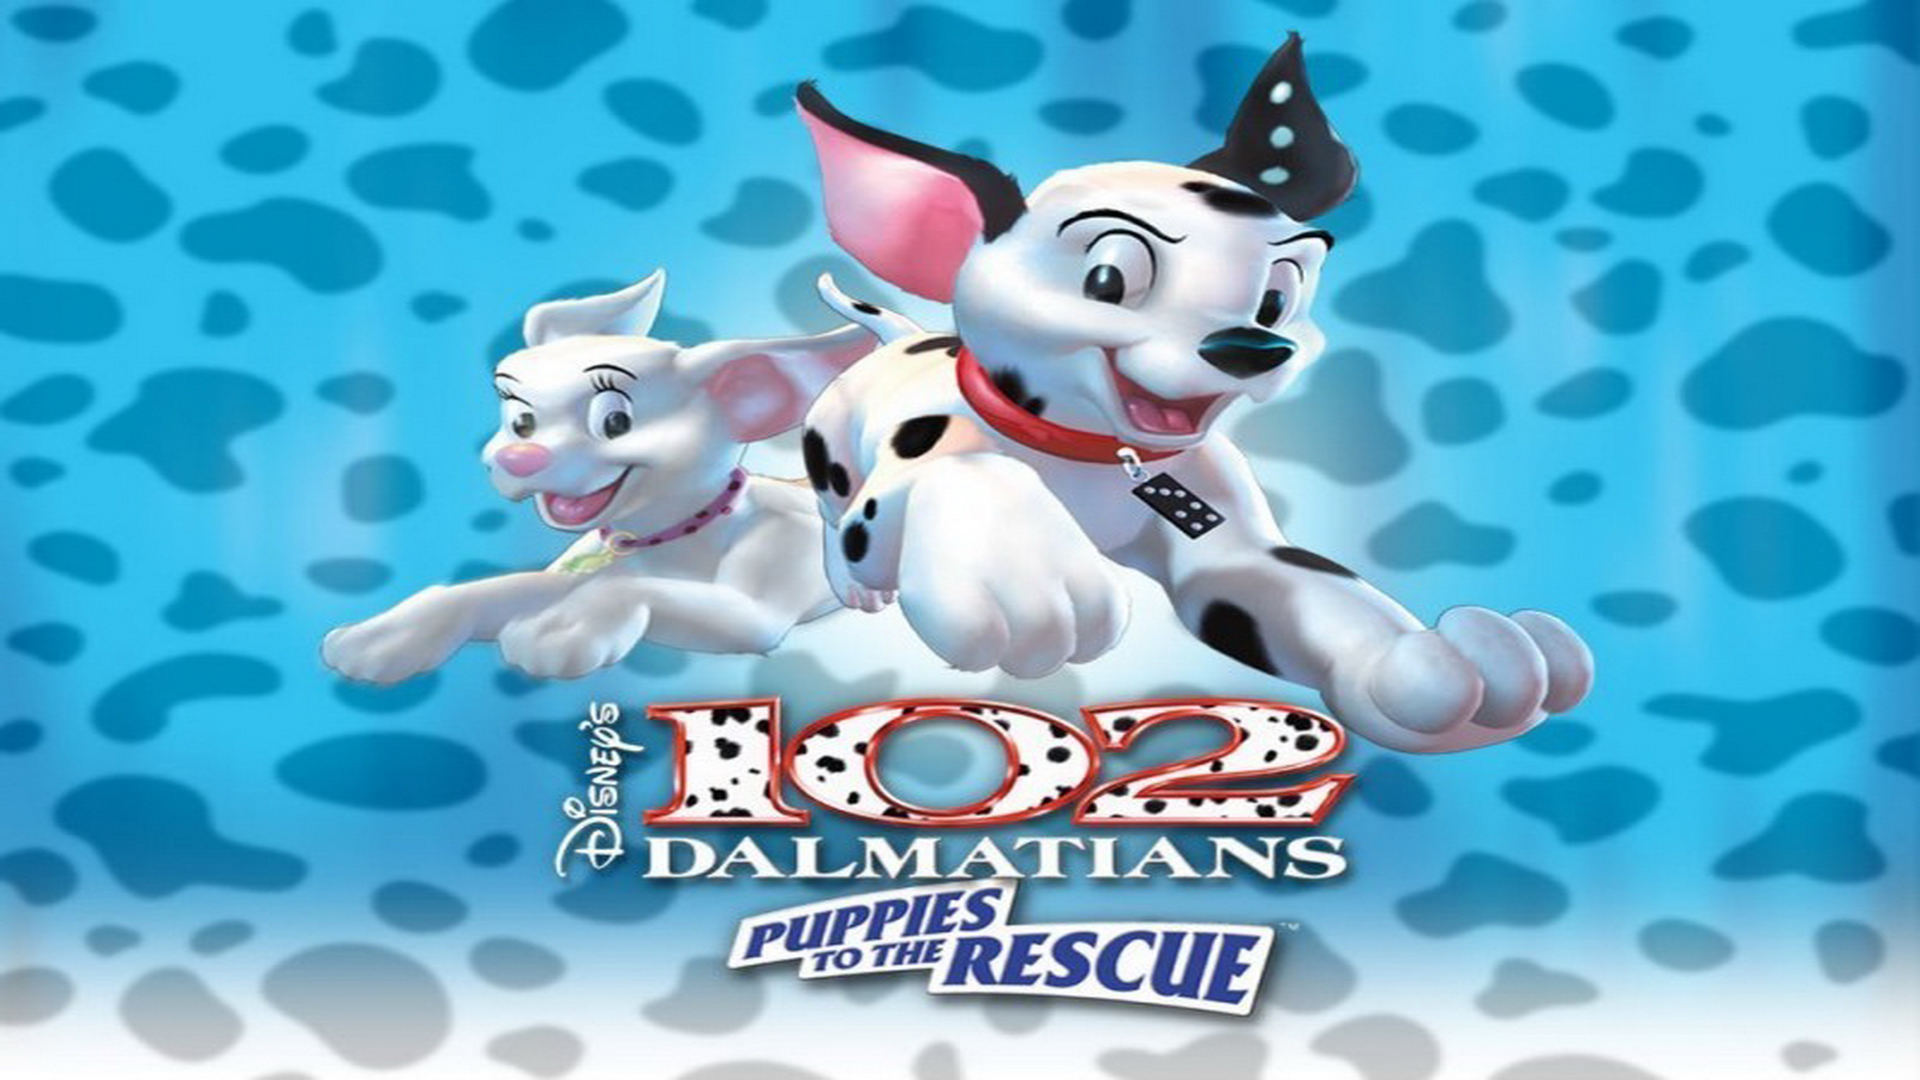 Dalmatians Classic Disney